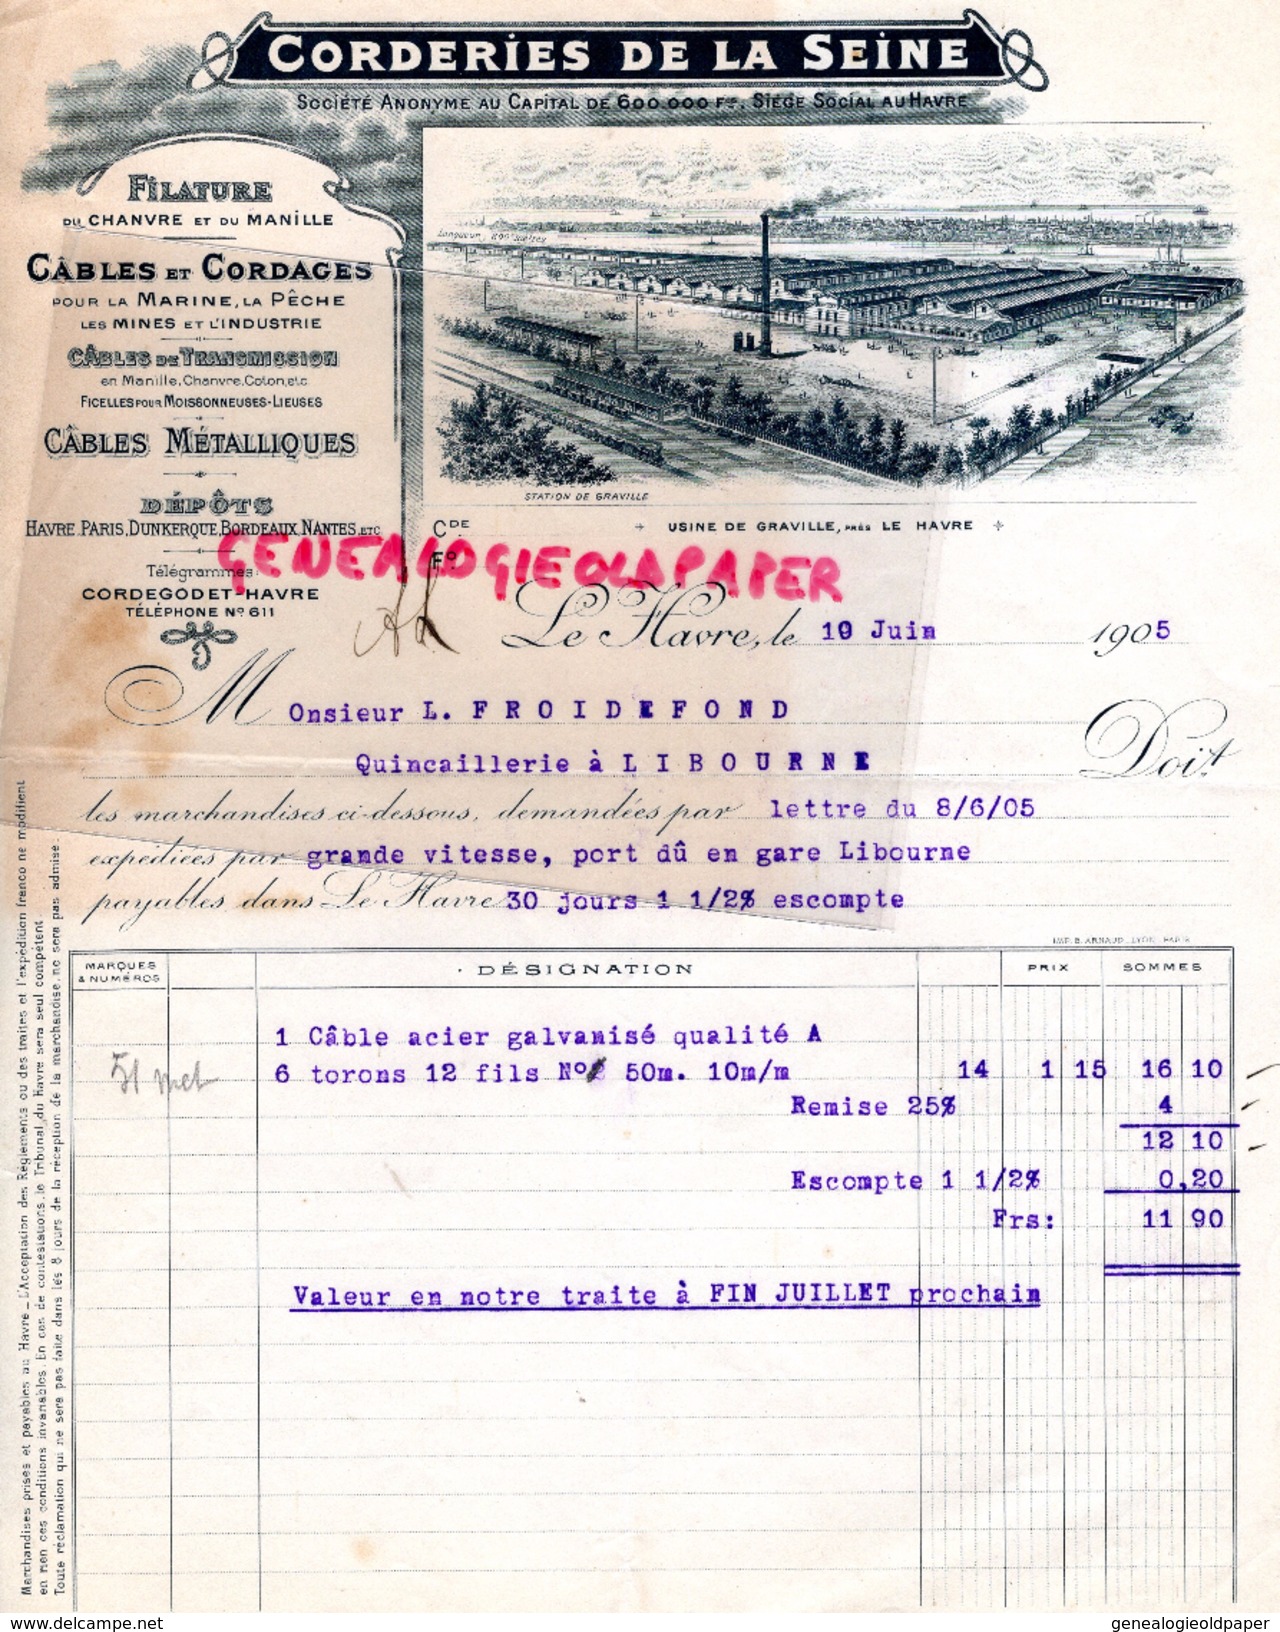 76 - LE HAVRE- FACTURE CORDERIES DE LA SEINE- FILATURE CHANVRE ET LIN- CABLES CORDAGES- USINE DE GRAVILLE- 1905 - Petits Métiers